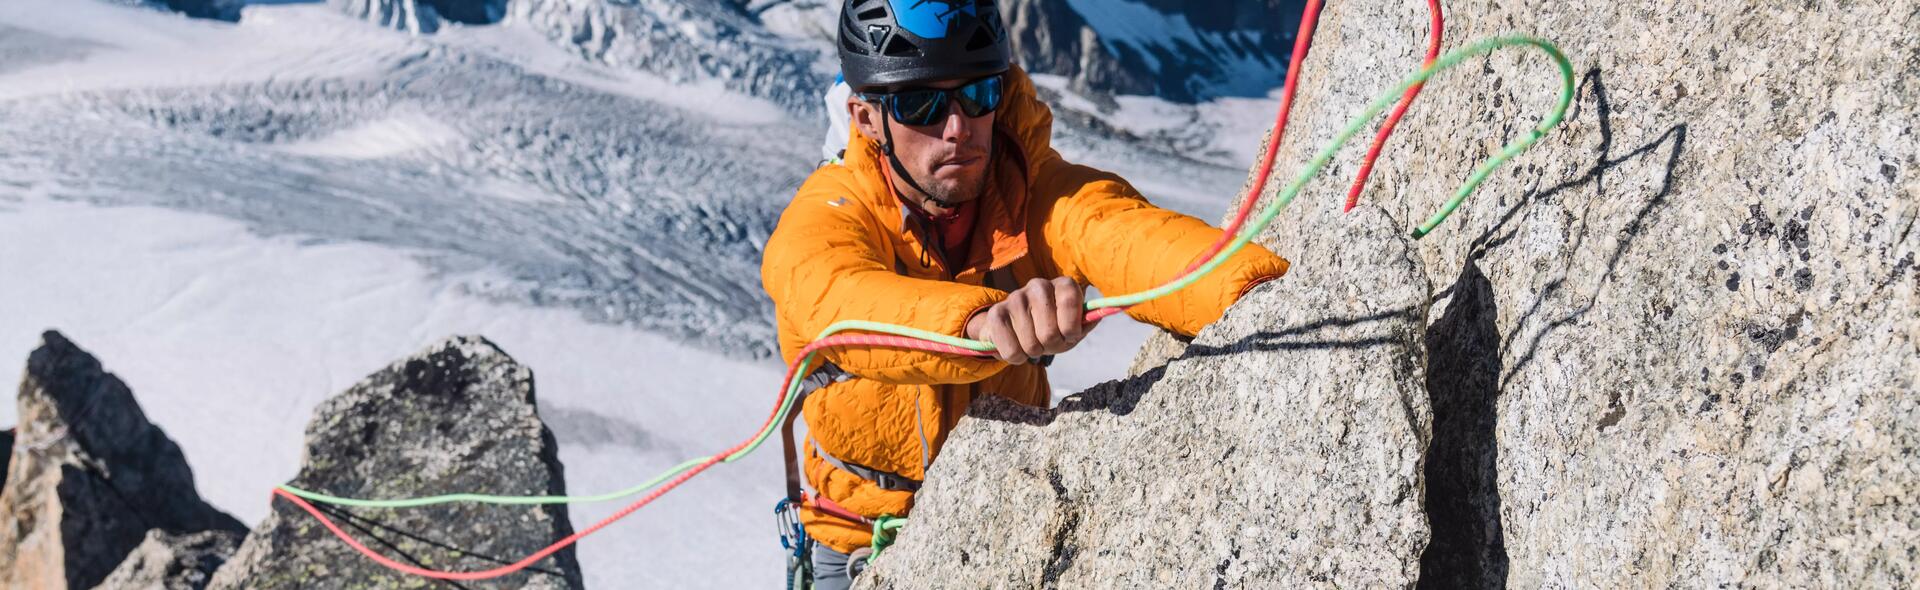 Quels sont les équipements essentiels pour l’alpinisme ?